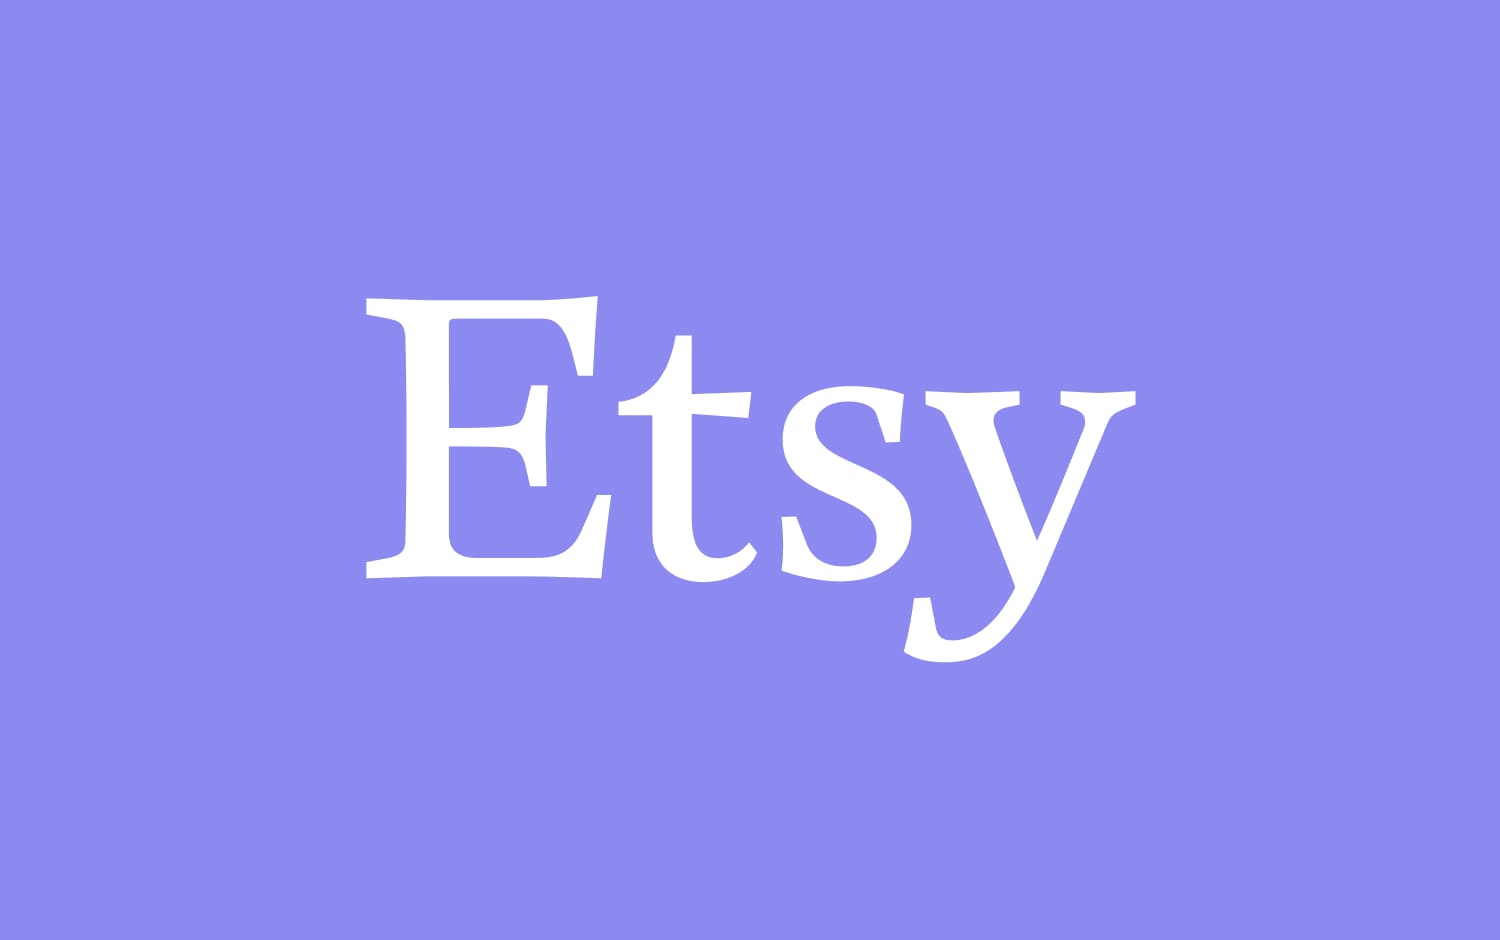 Logotipo de Etsy con letras blancas sobre un fondo lavanda